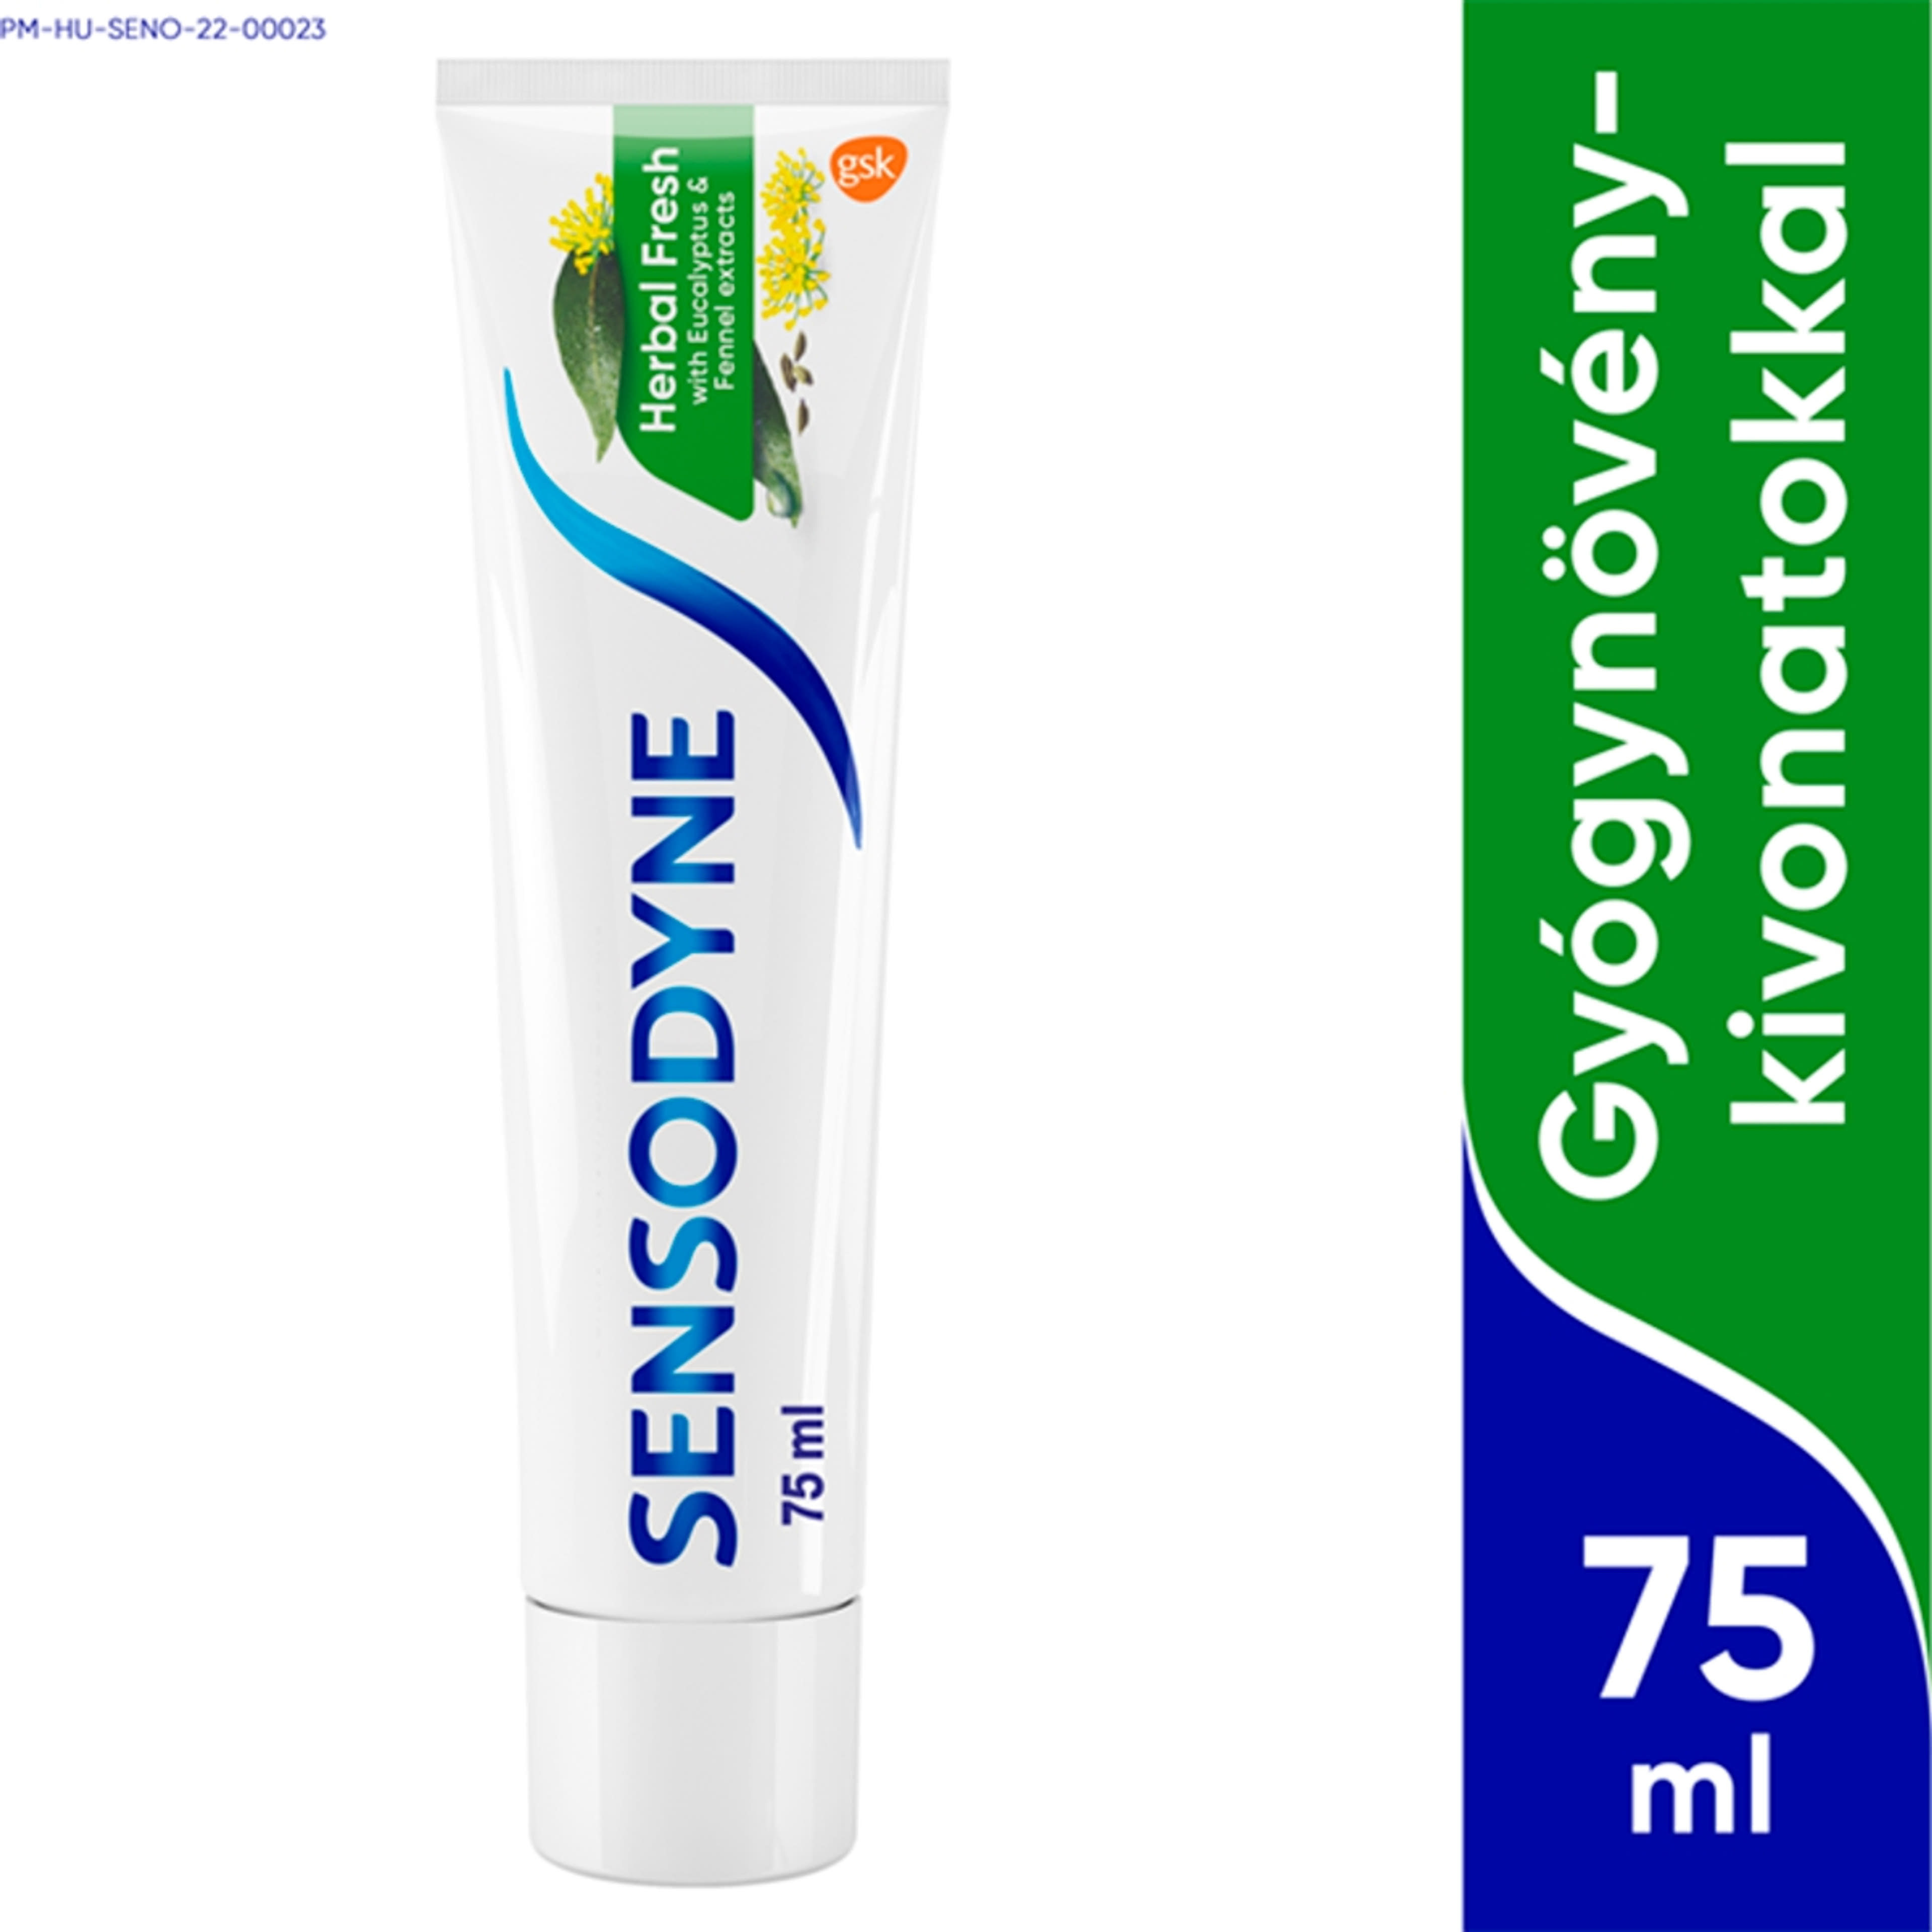 Sensodyne Herbal Fresh fogkrém - 75 ml